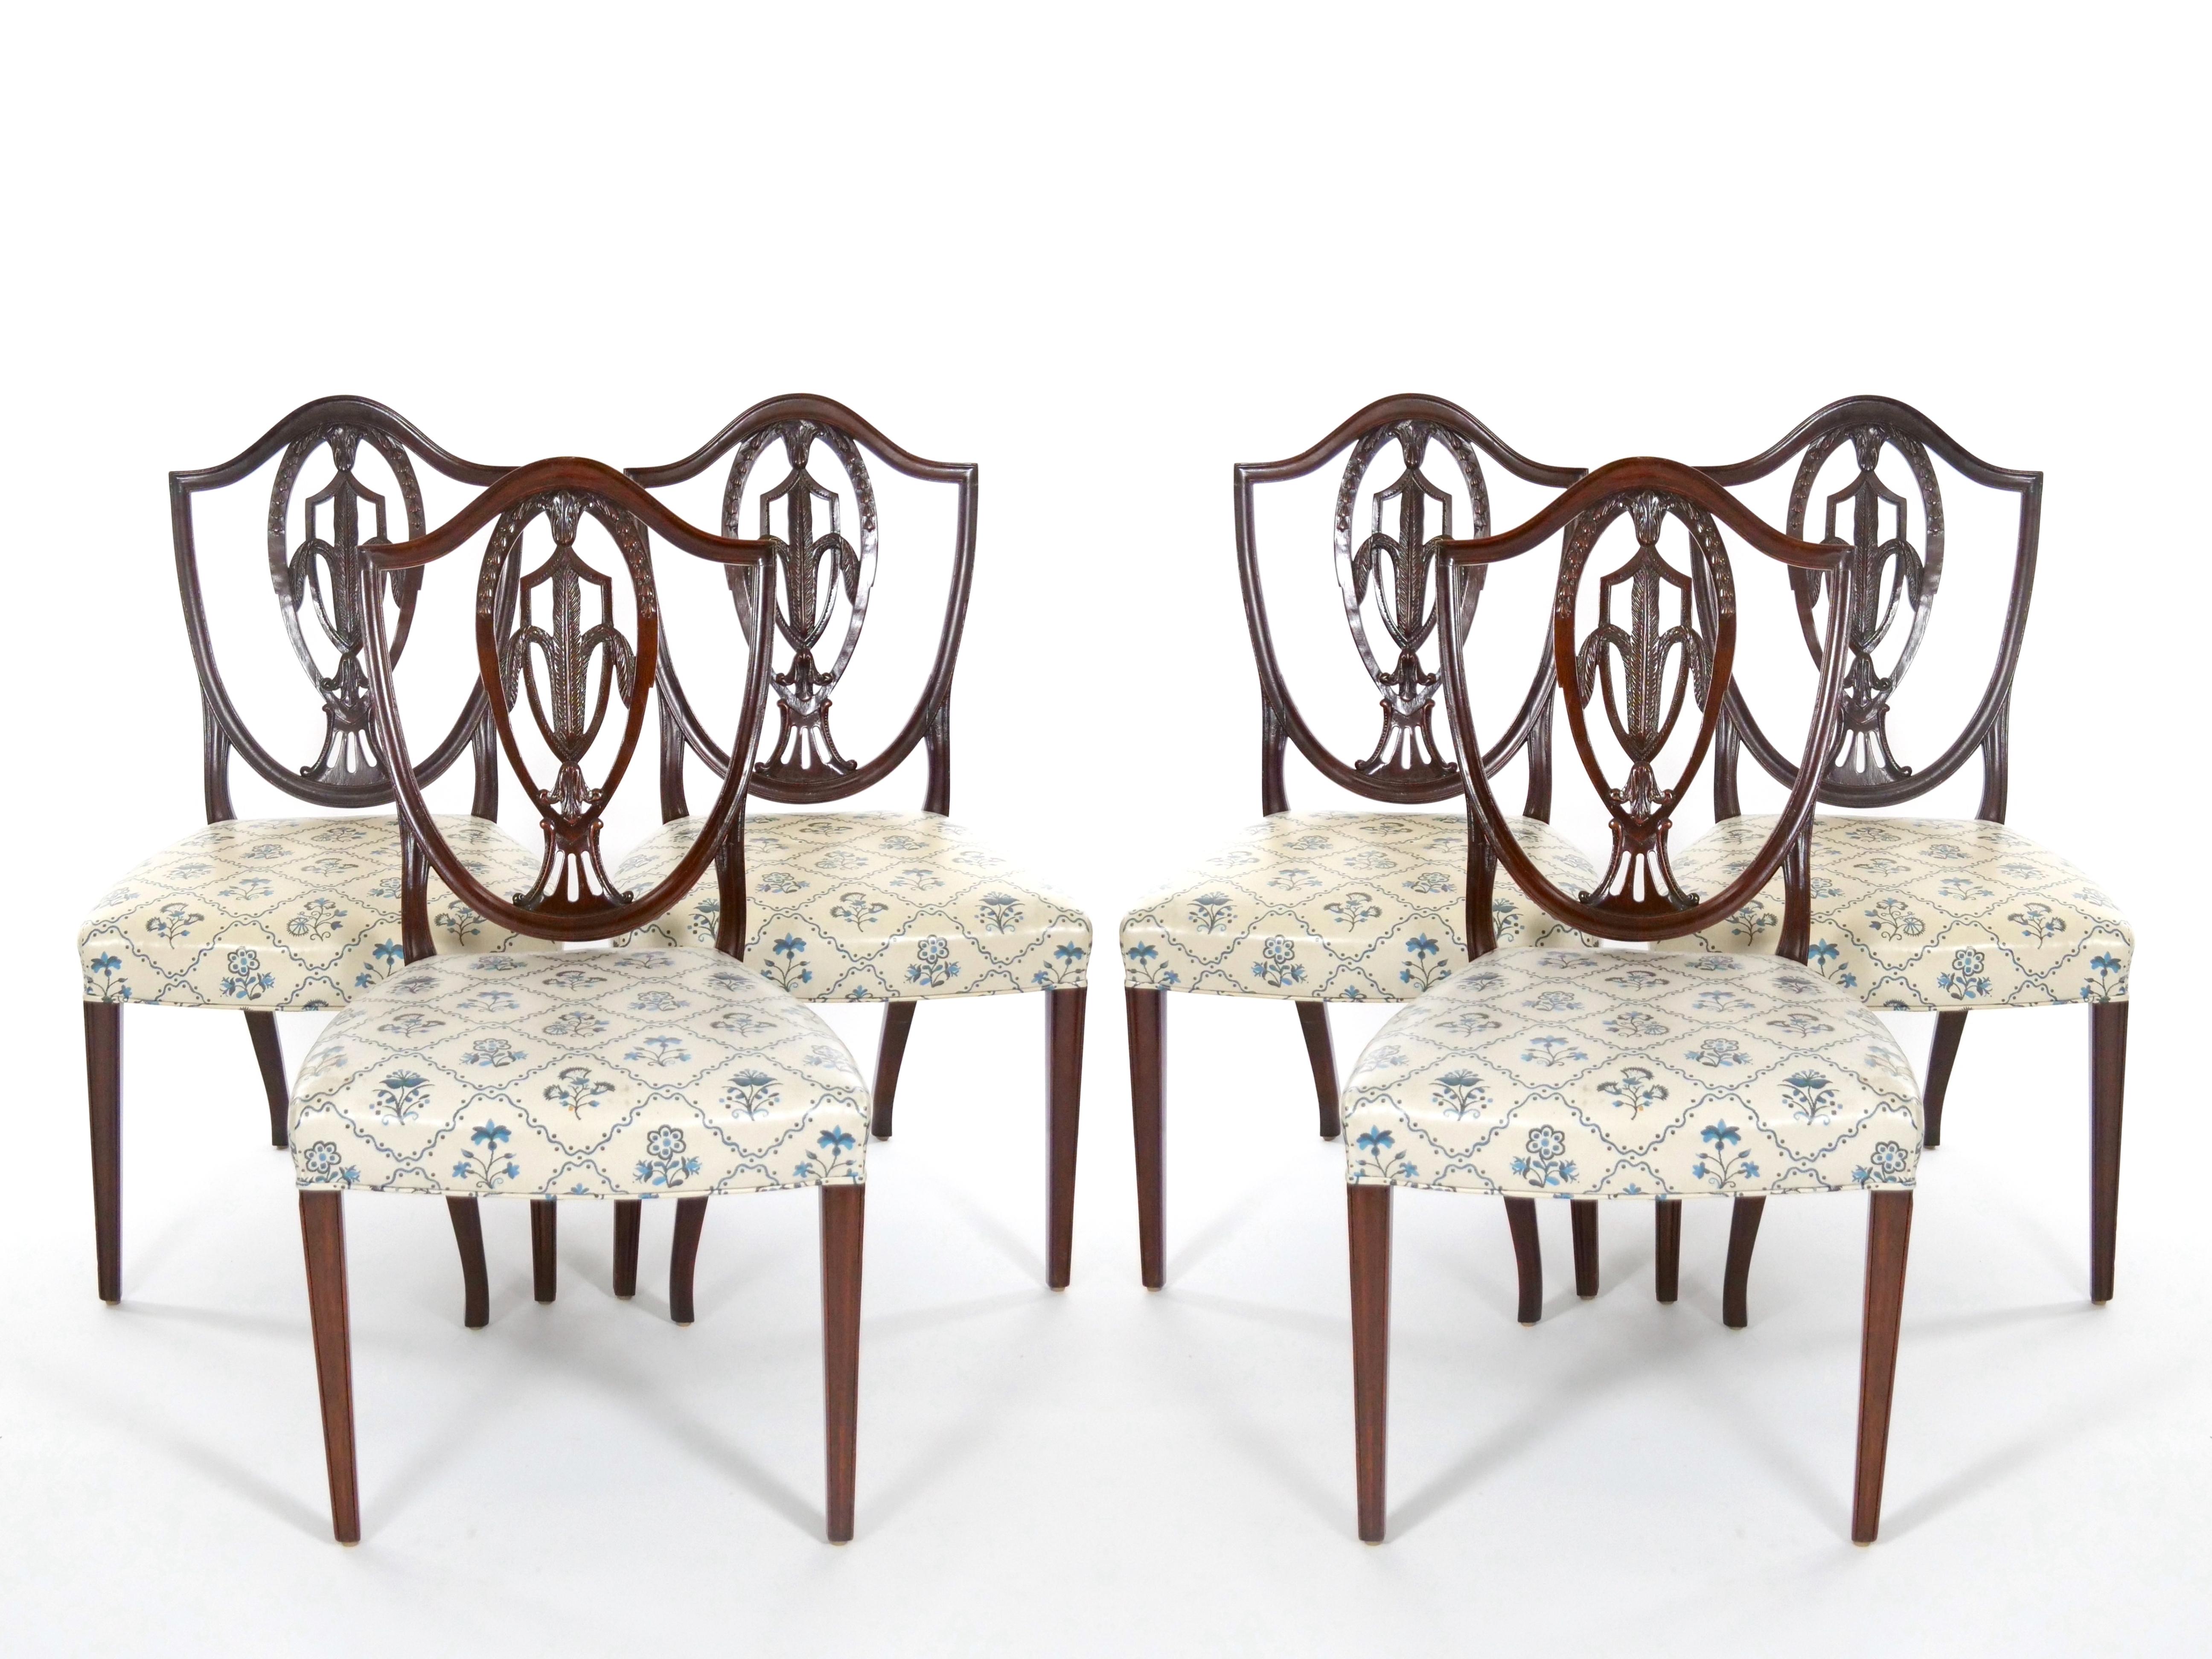 Wir präsentieren einen exquisiten Satz antiker Hepplewhite-Esszimmerstühle aus reichem Mahagoni, die das elegante Prince of Wales-Design präsentieren. Das Set besteht aus zwei edlen Sesseln und sechs charmanten Beistellstühlen, die jeweils mit einer